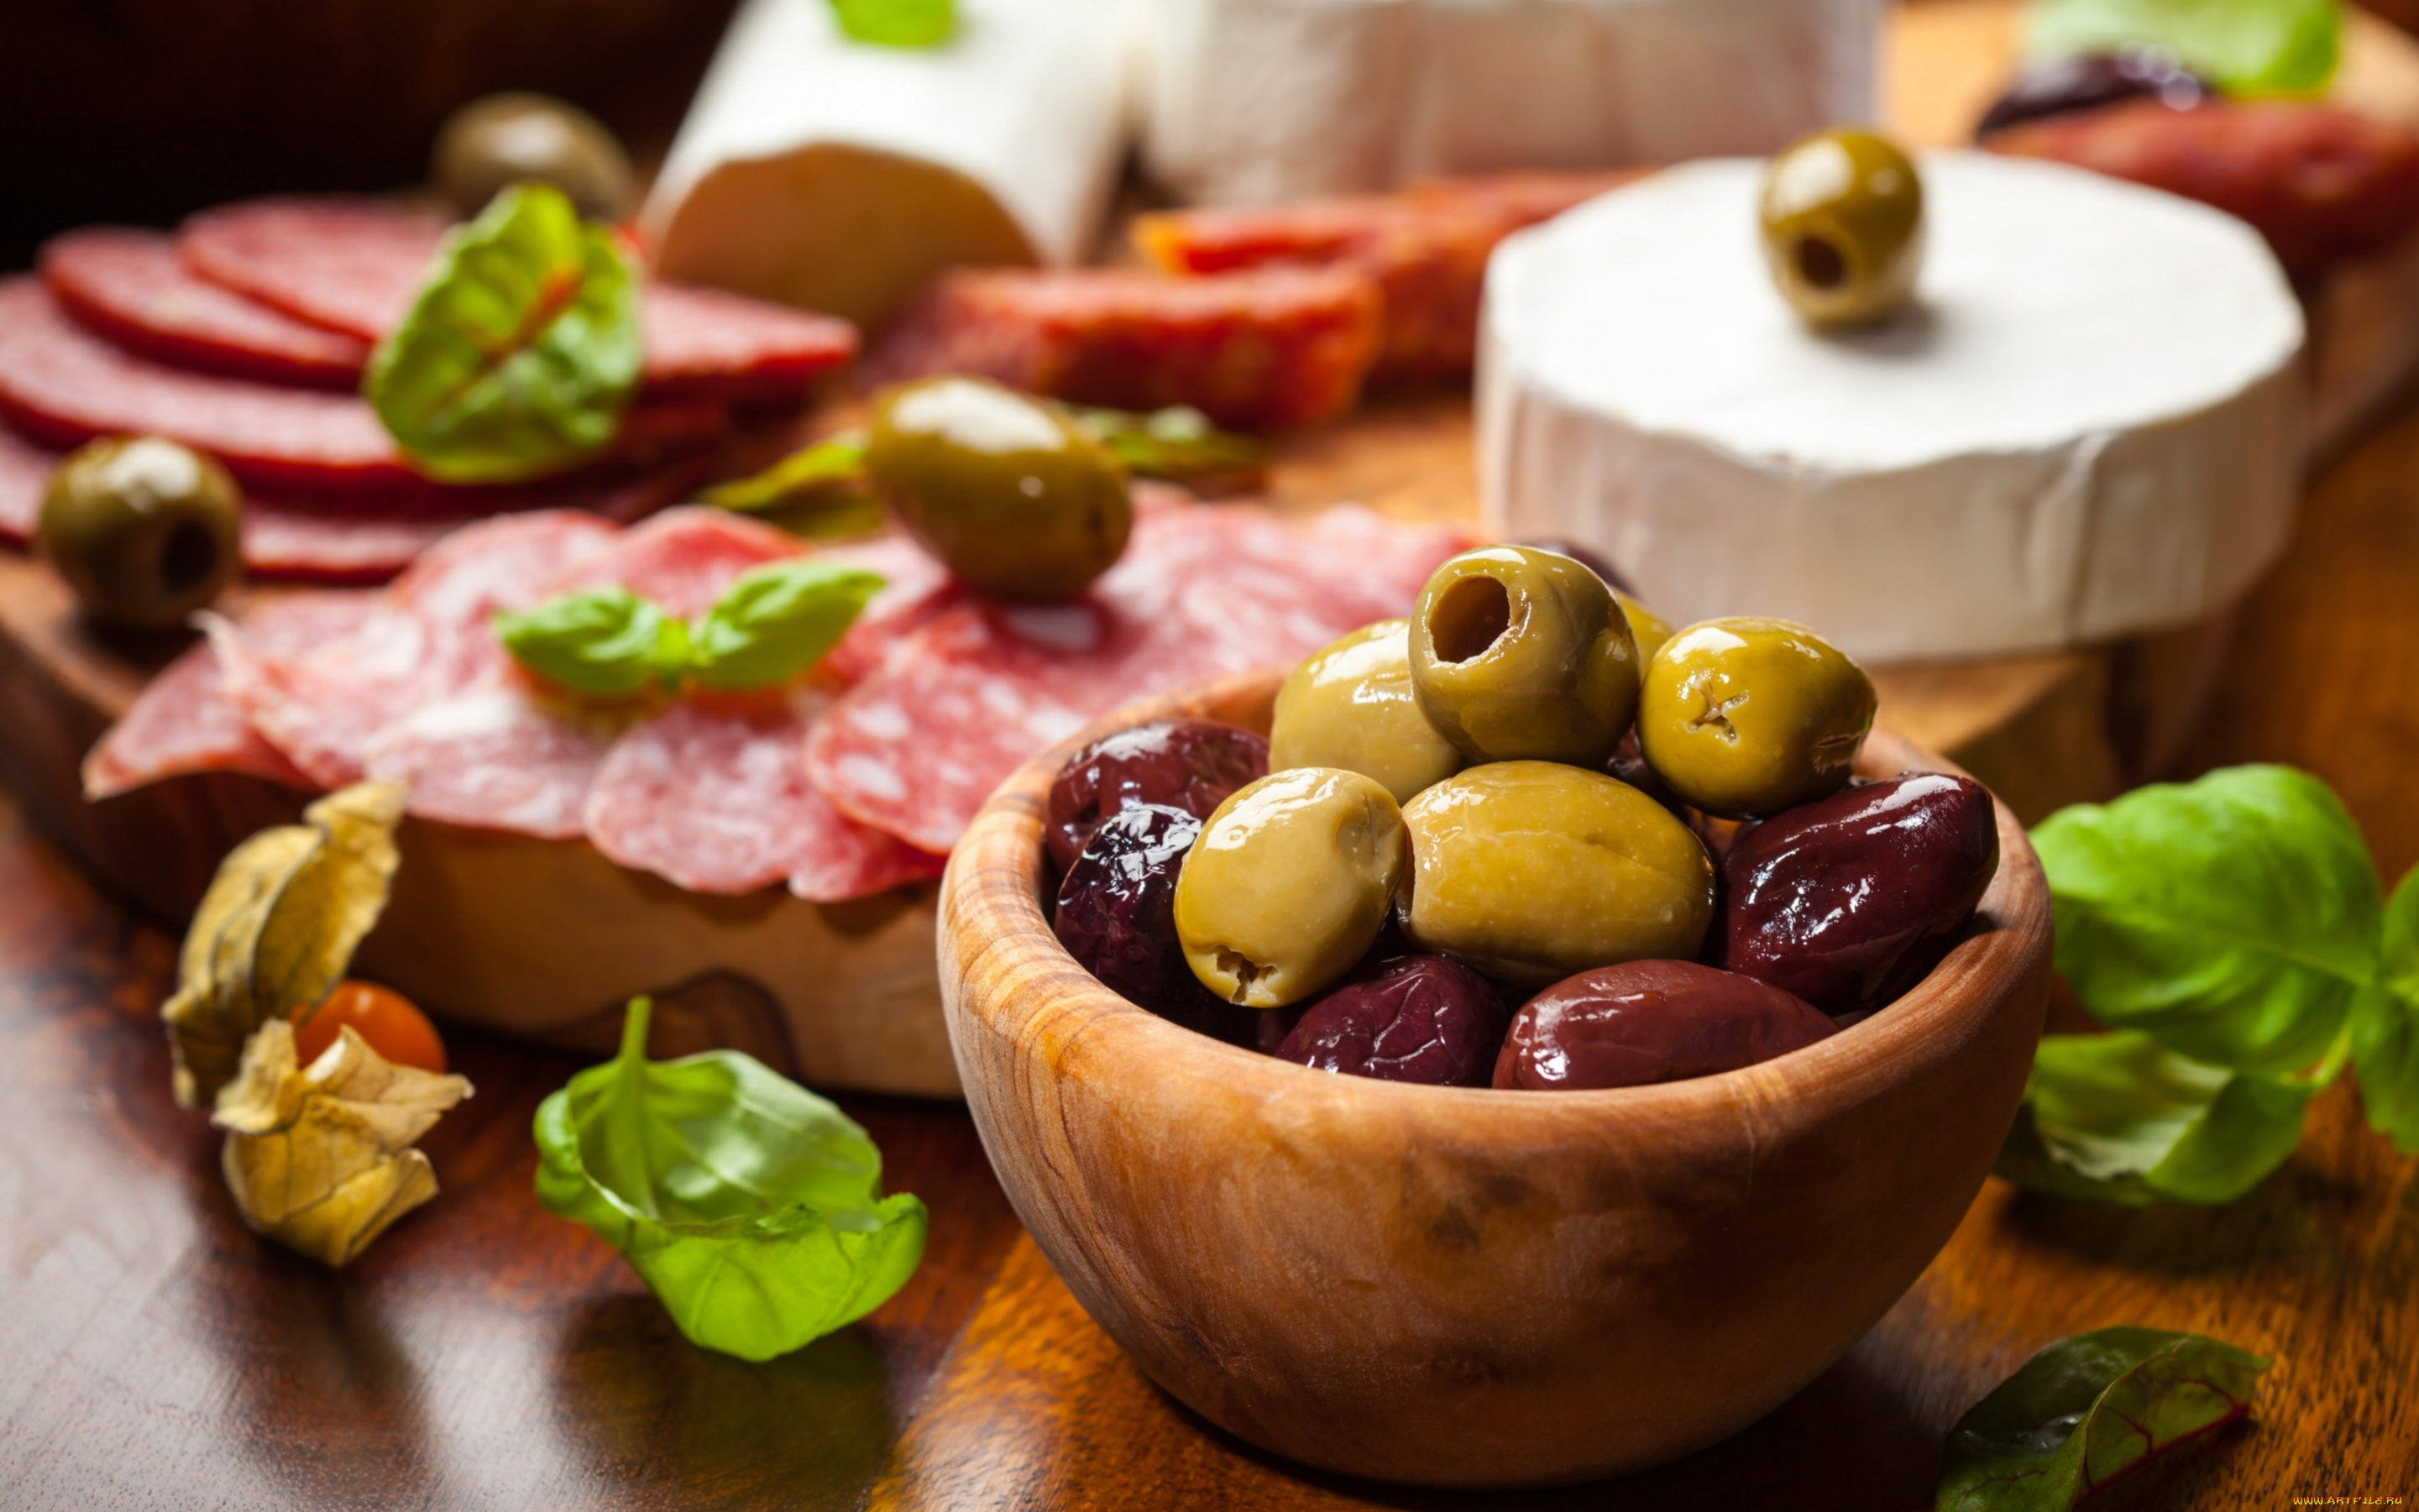 еда, разное, салями, листья, колбаса, сыр, оливки, маслины